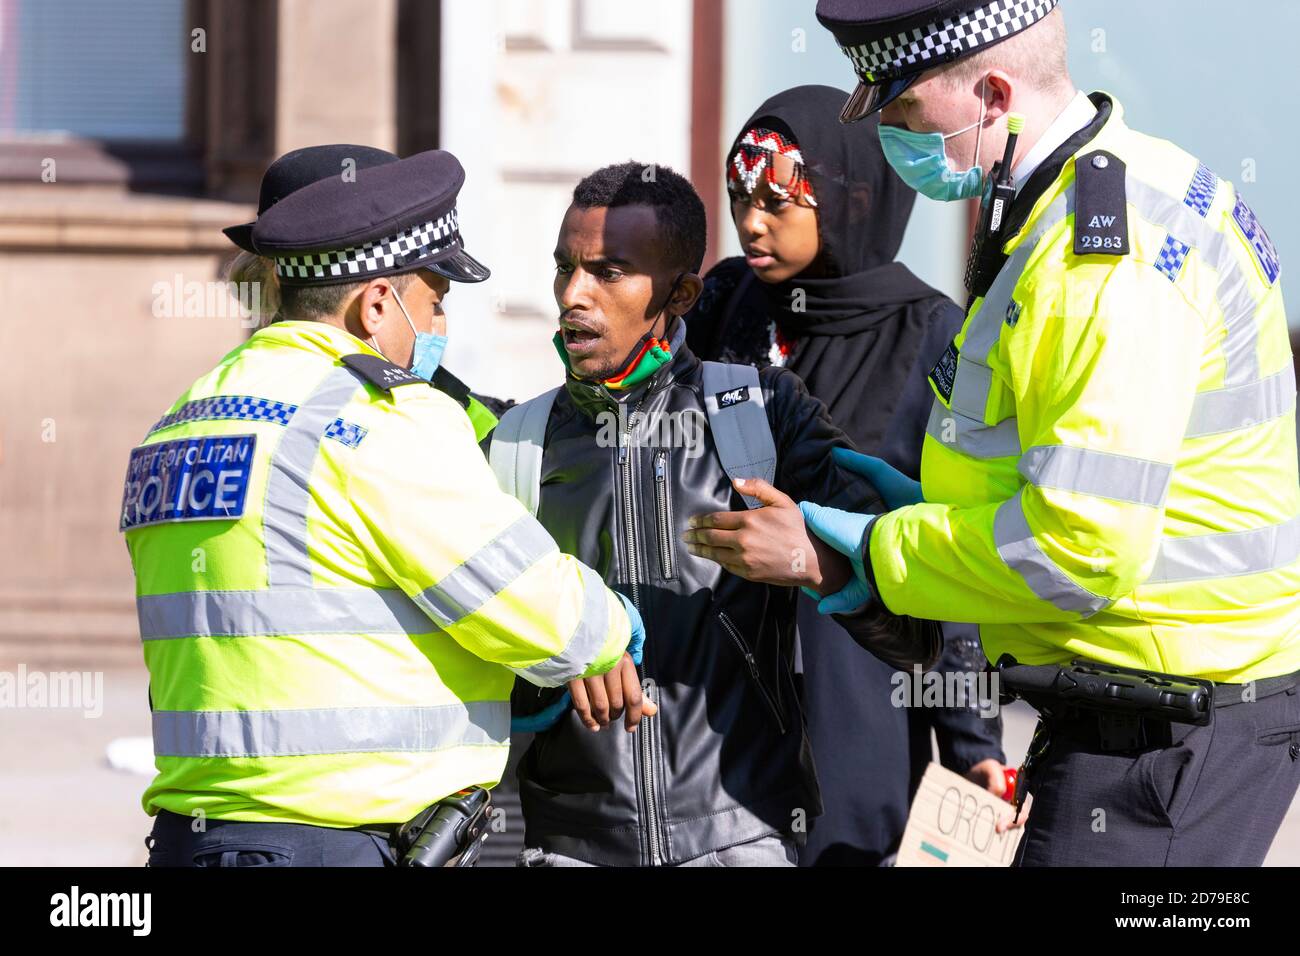 La police a arrêté un manifestant éthiopien pour avoir enfreint les restrictions de distance sociale de la COVID-19, manifestation de personnes d'Oromo, Whitehall, Londres, 10 septembre Banque D'Images